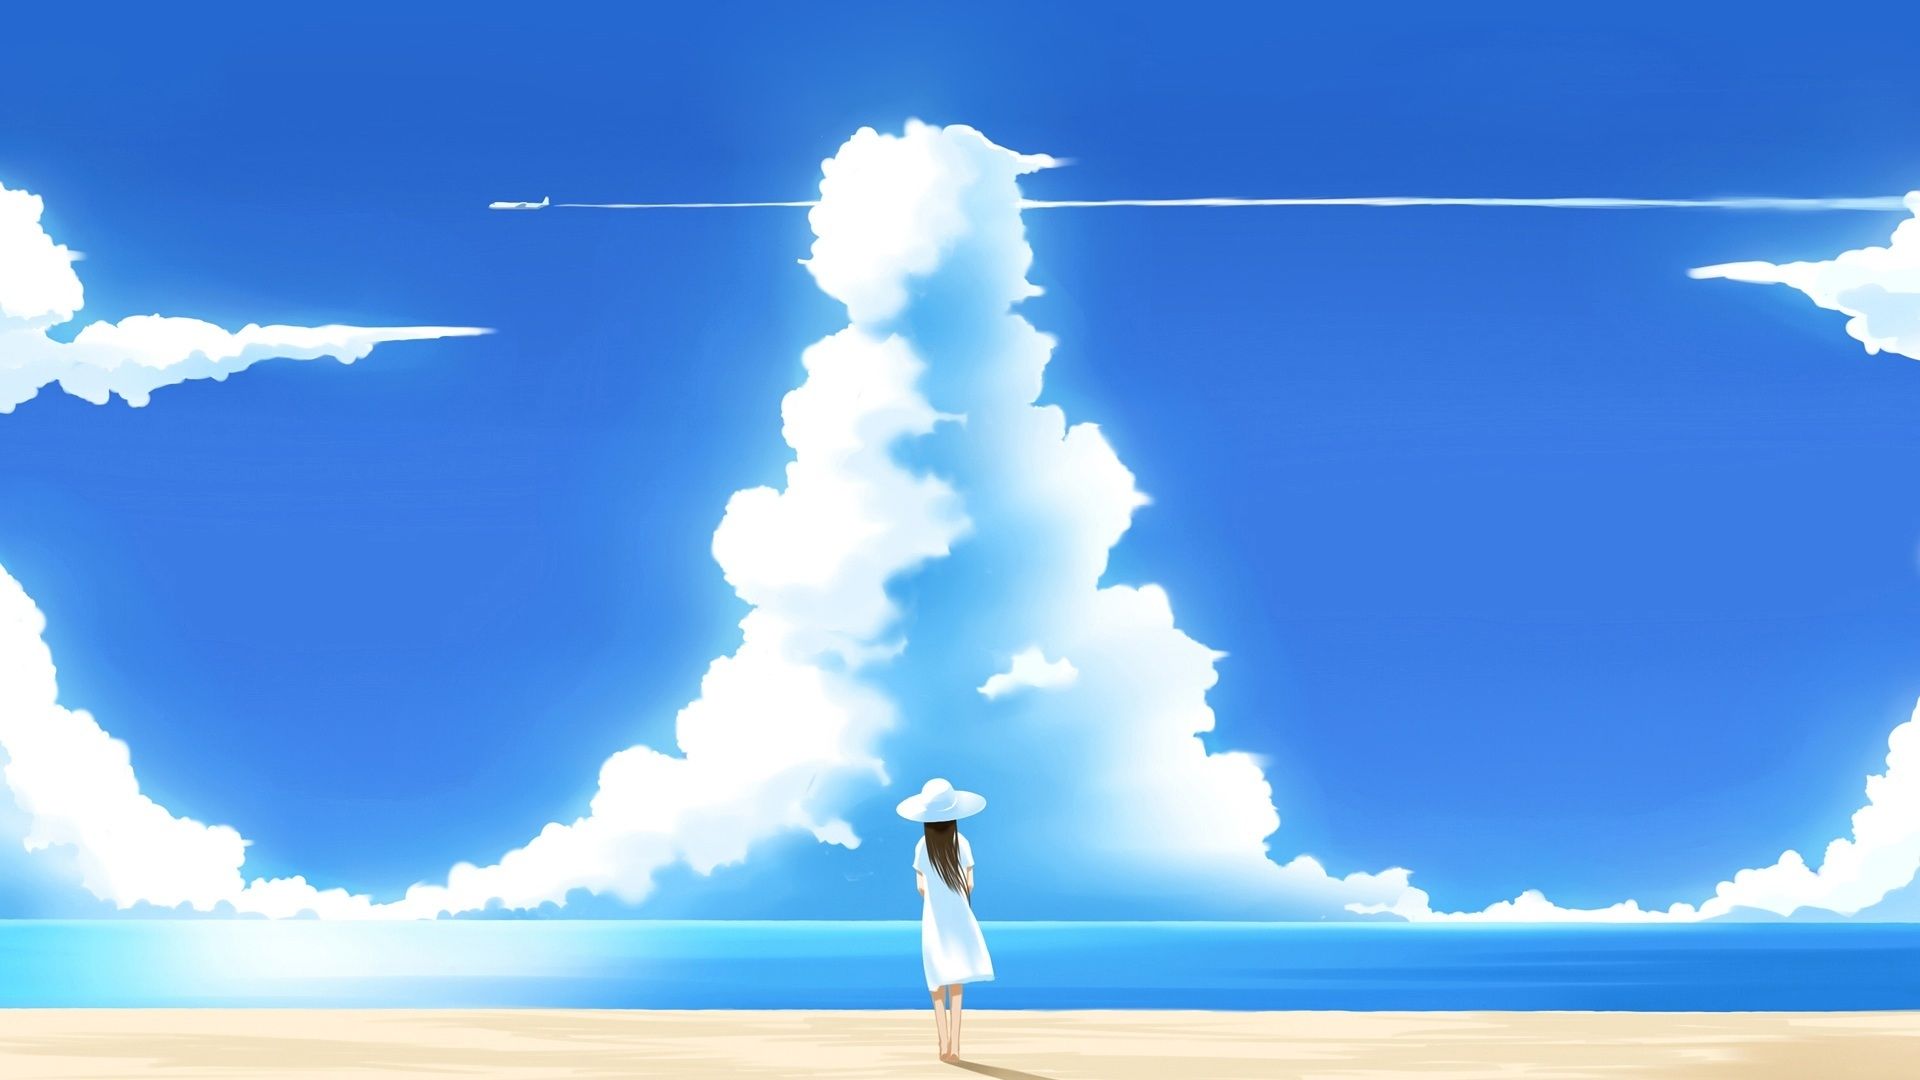 Unique Anime Beach Wallpaper Scenery